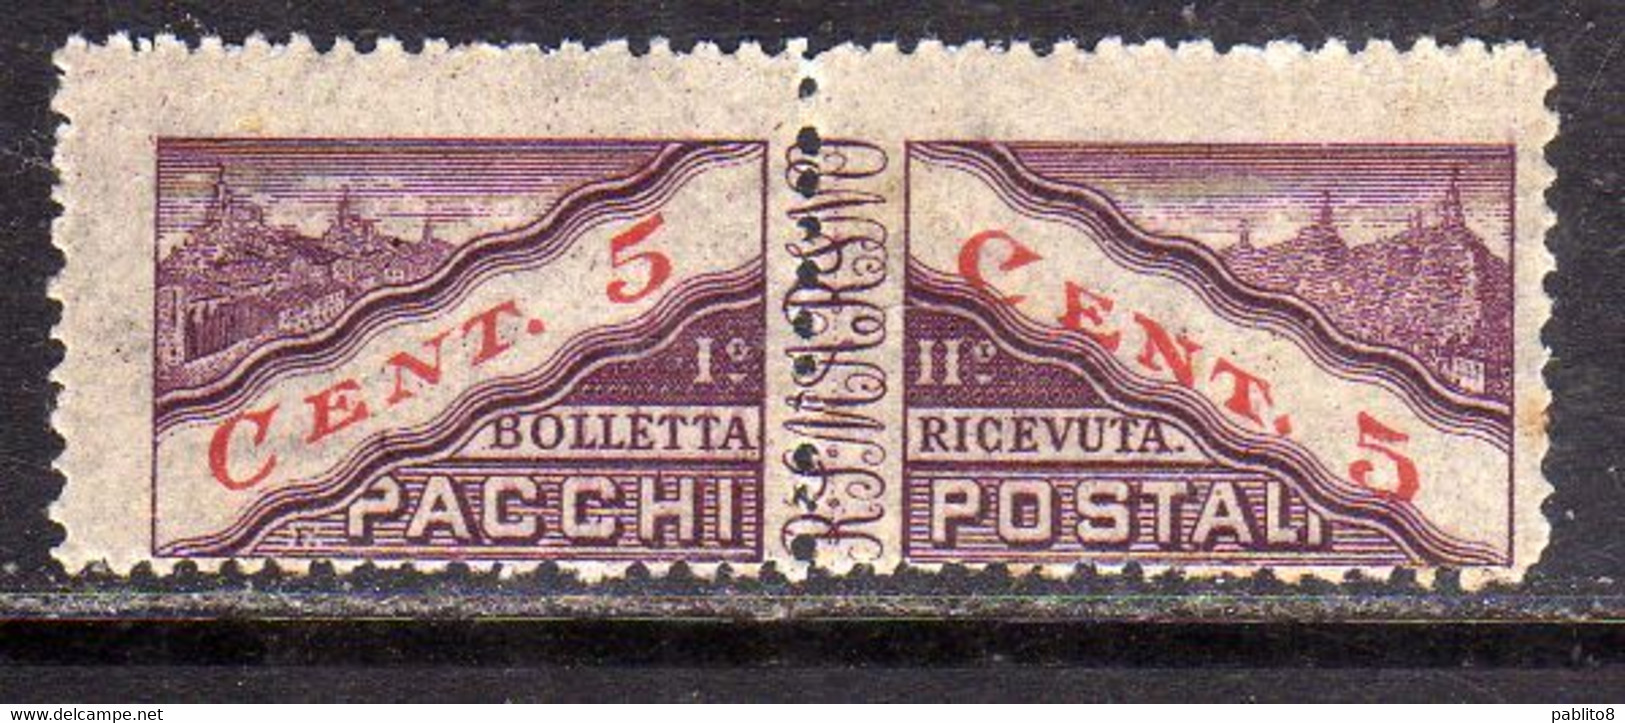 REPUBBLICA DI SAN MARINO 1945 PACCHI POSTALI PARCEL POST CENT. 5c MNH - Paketmarken